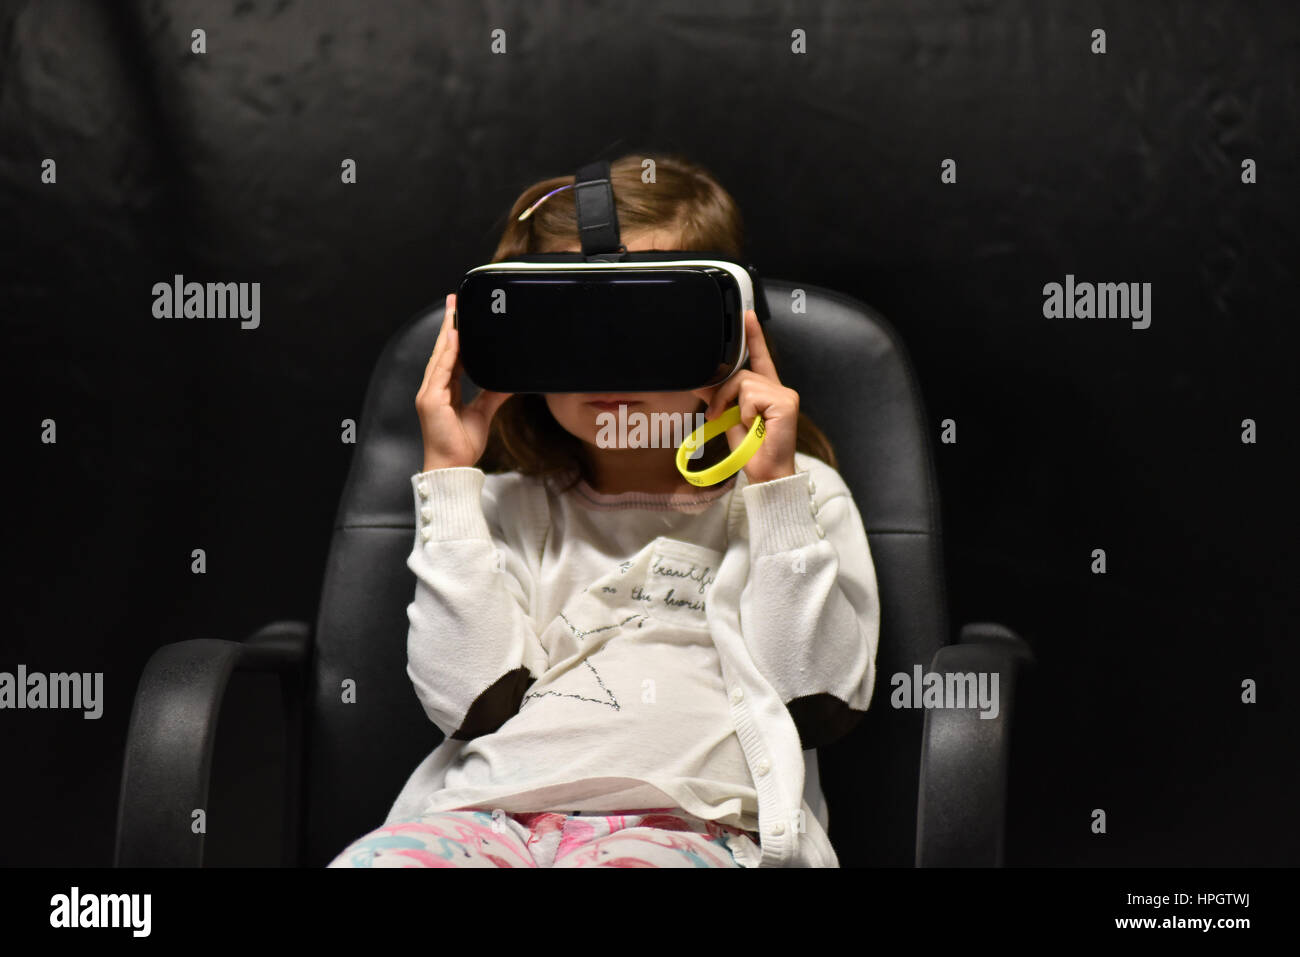 CLUJ-NAPOCA, Rumänien - 7. August 2016: Mädchen versucht virtual-Reality-Samsung Gear VR Kopfhörer und Hand Kontrollen während der virtual-Reality-Exposition am Stockfoto